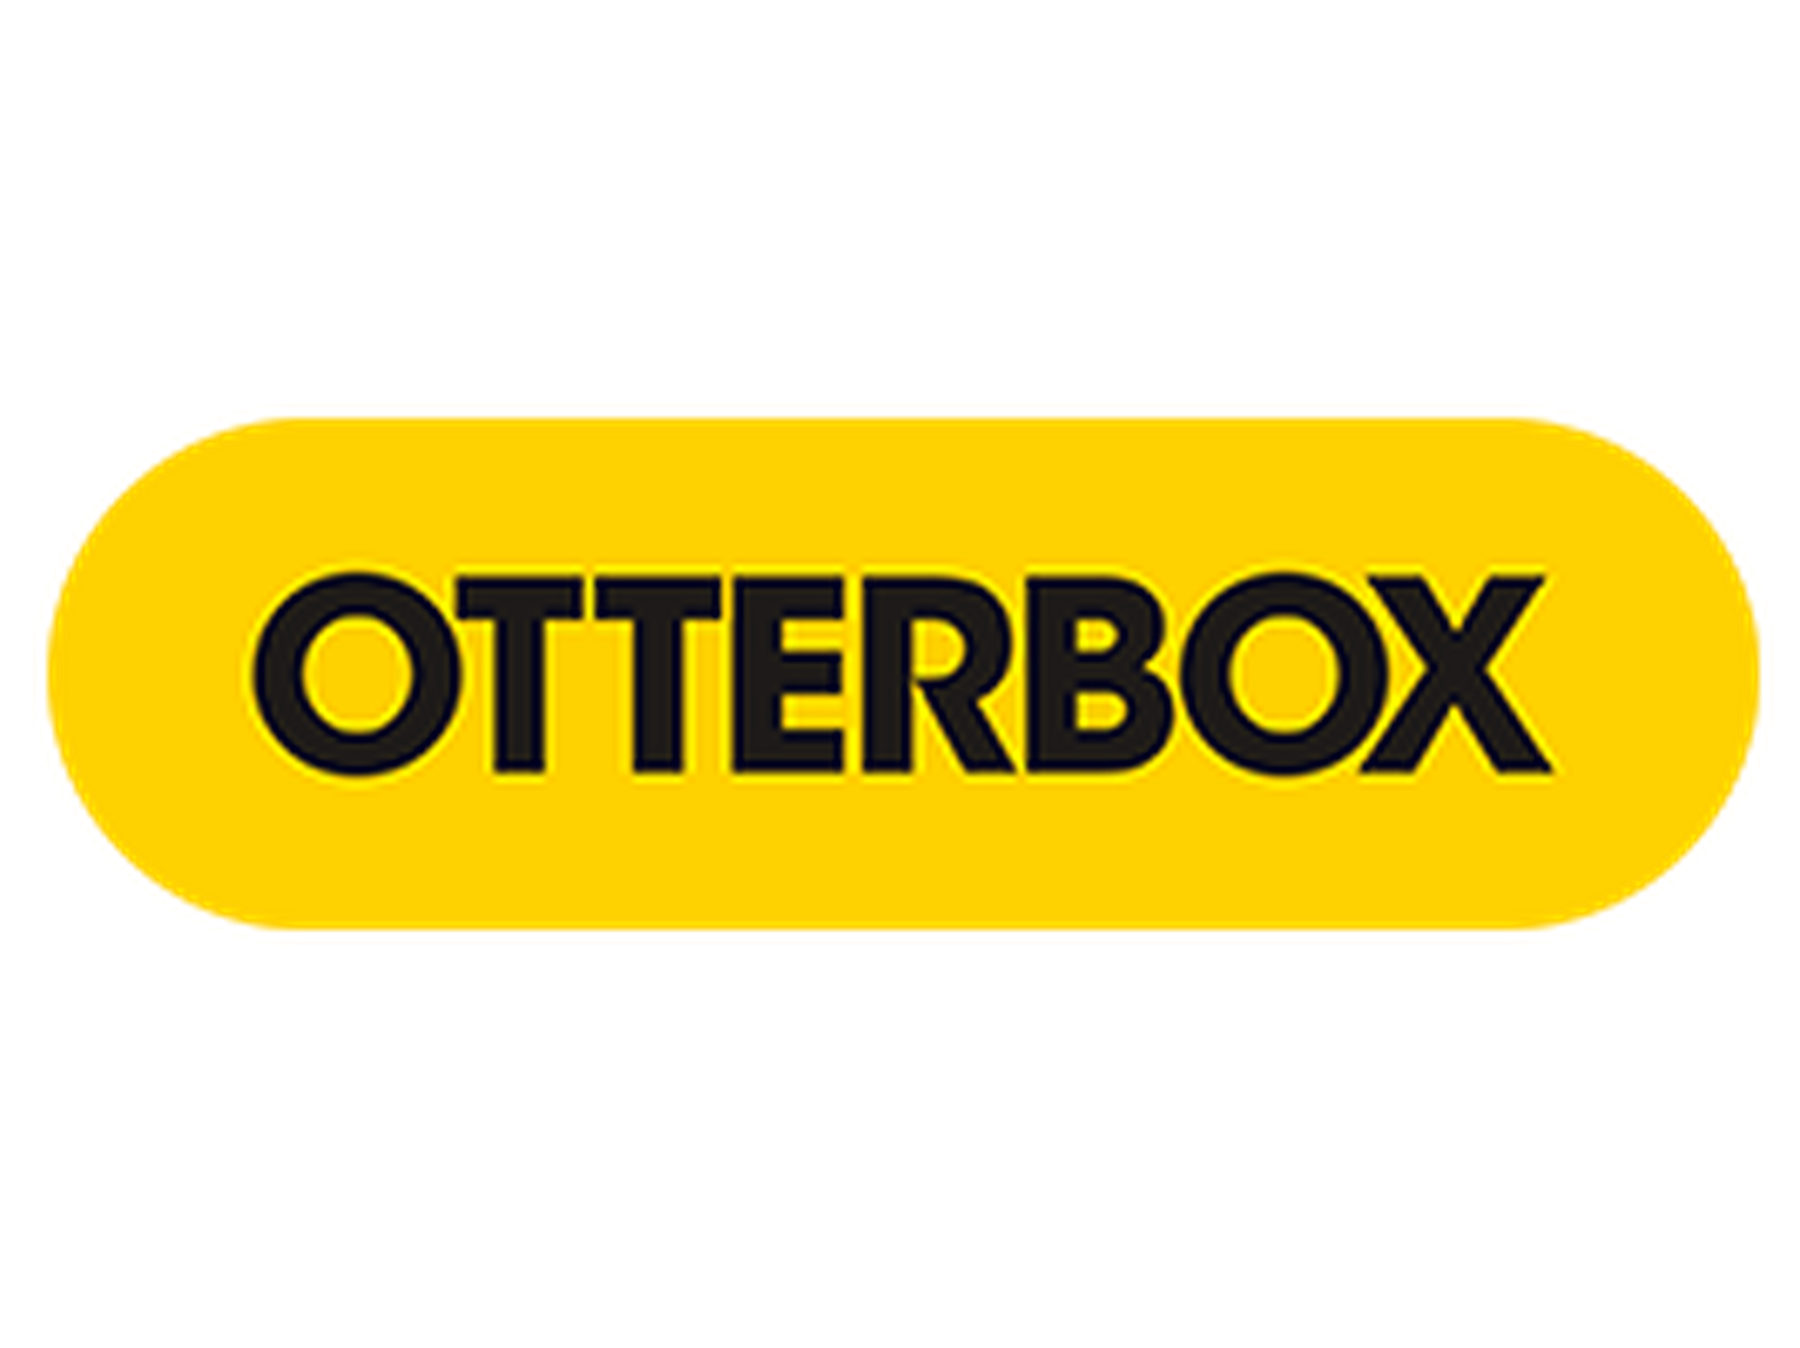 OtterBox Promo Code